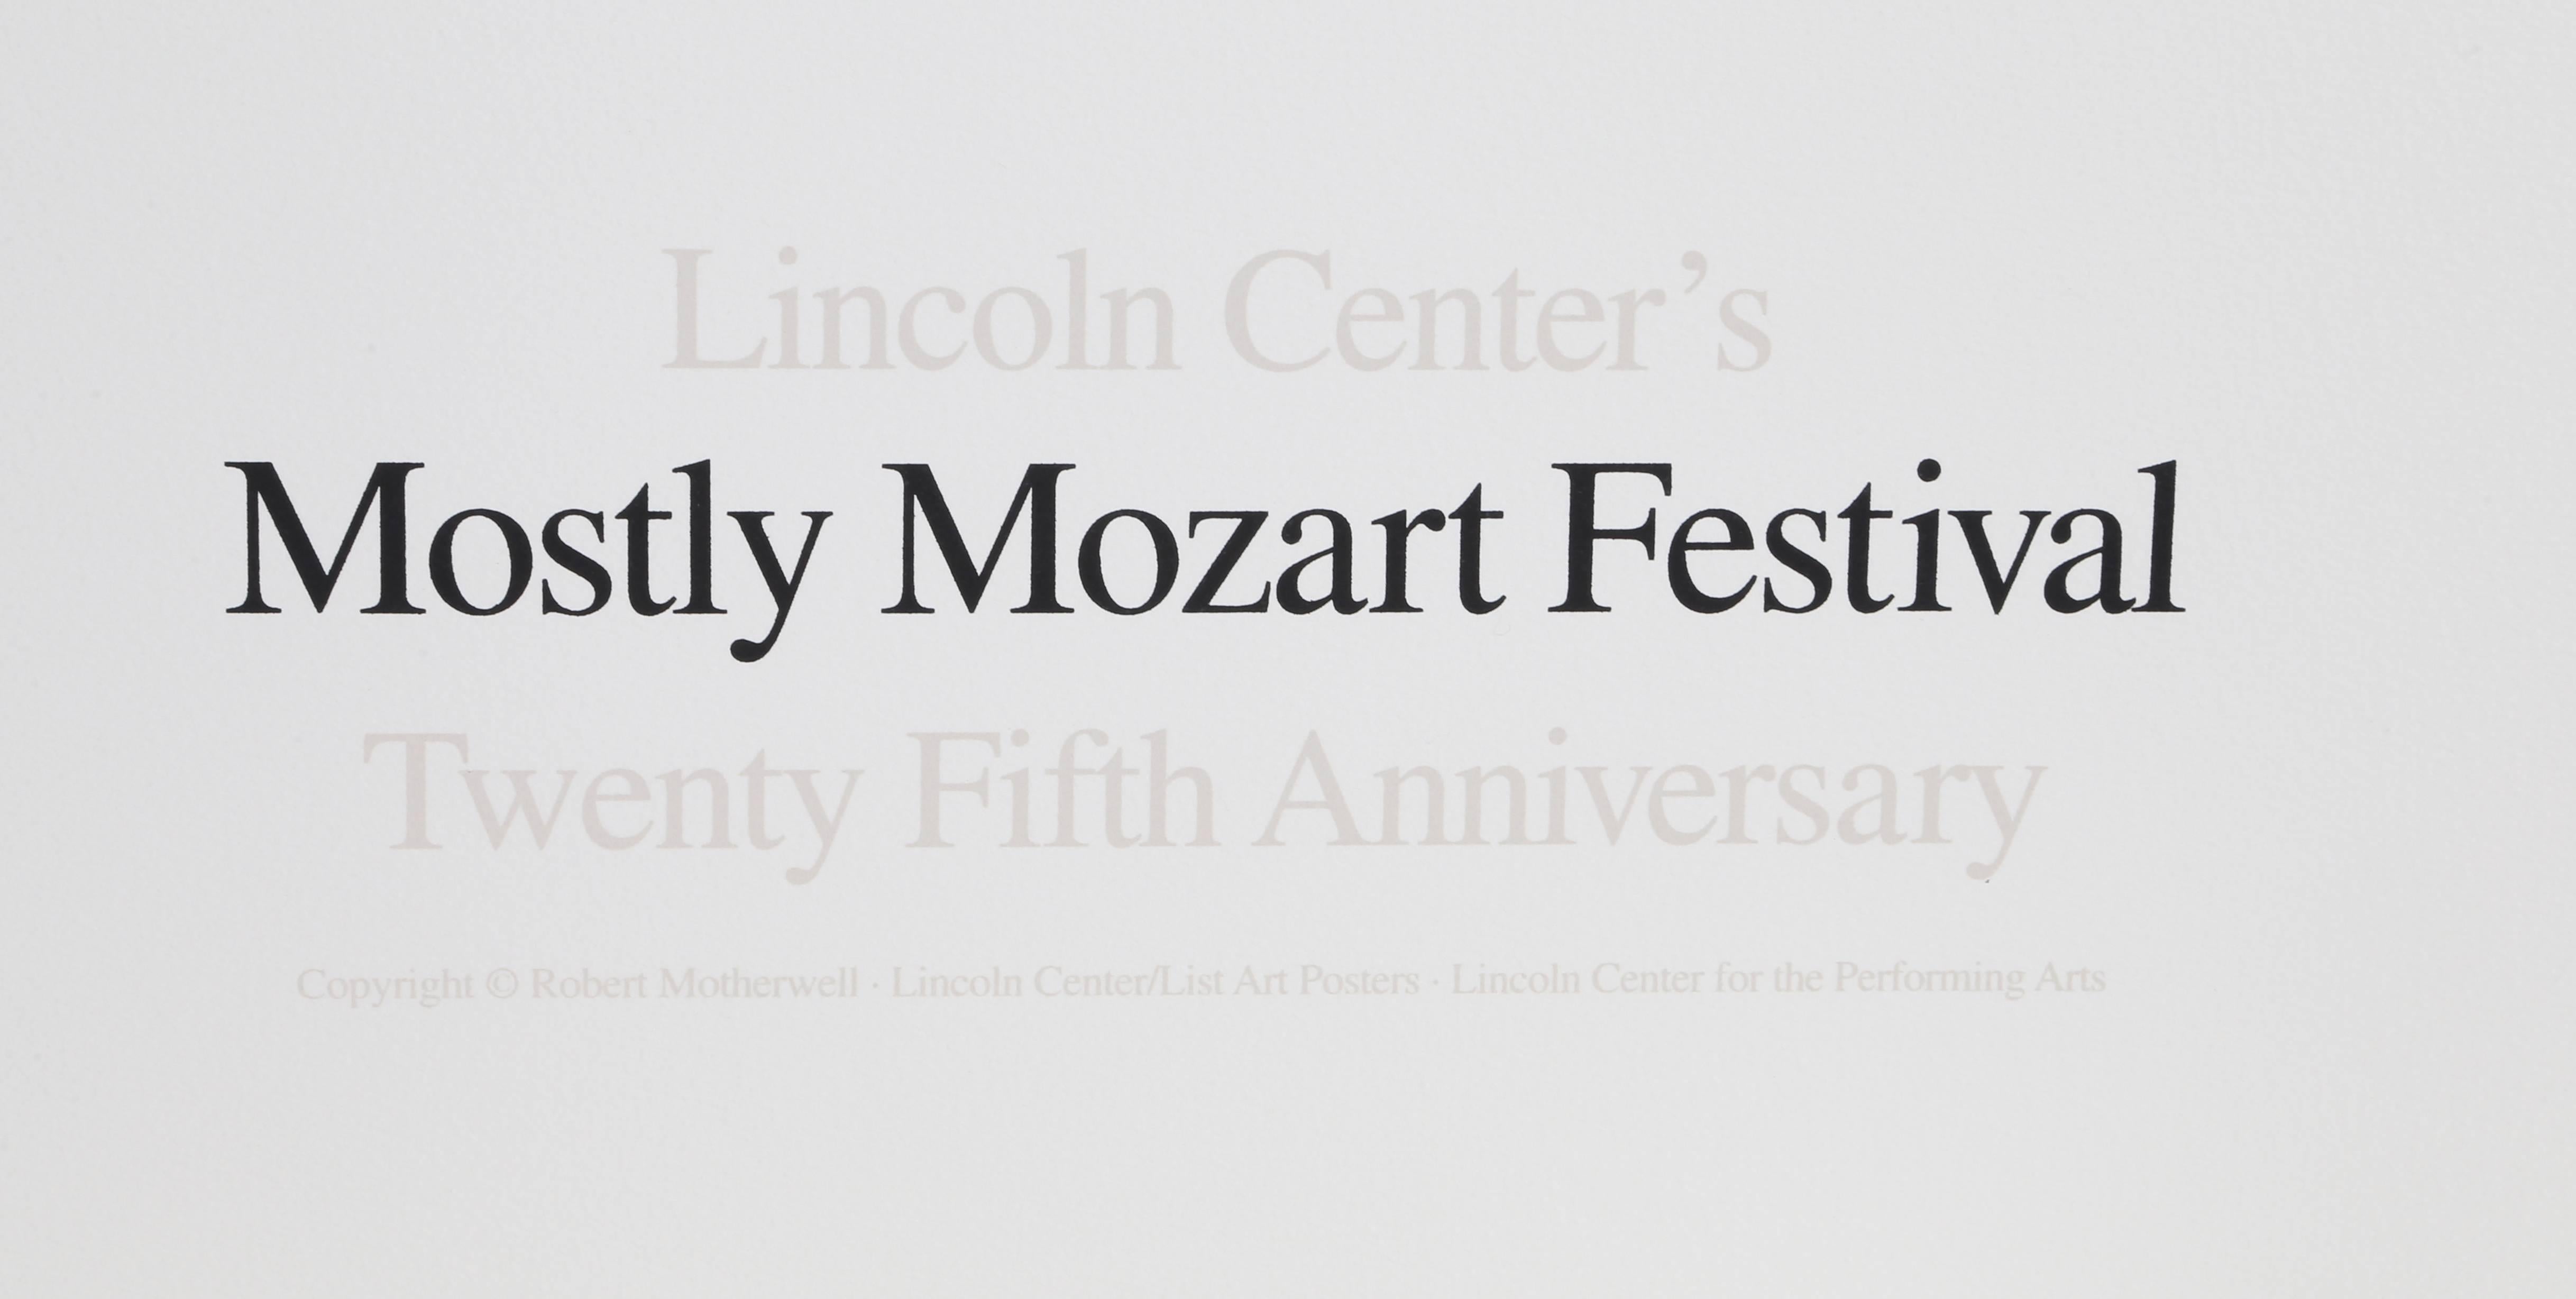 Le Lincoln Center célèbre son 25e anniversaire avec une lithographie de Robert Motherwell en vente 1